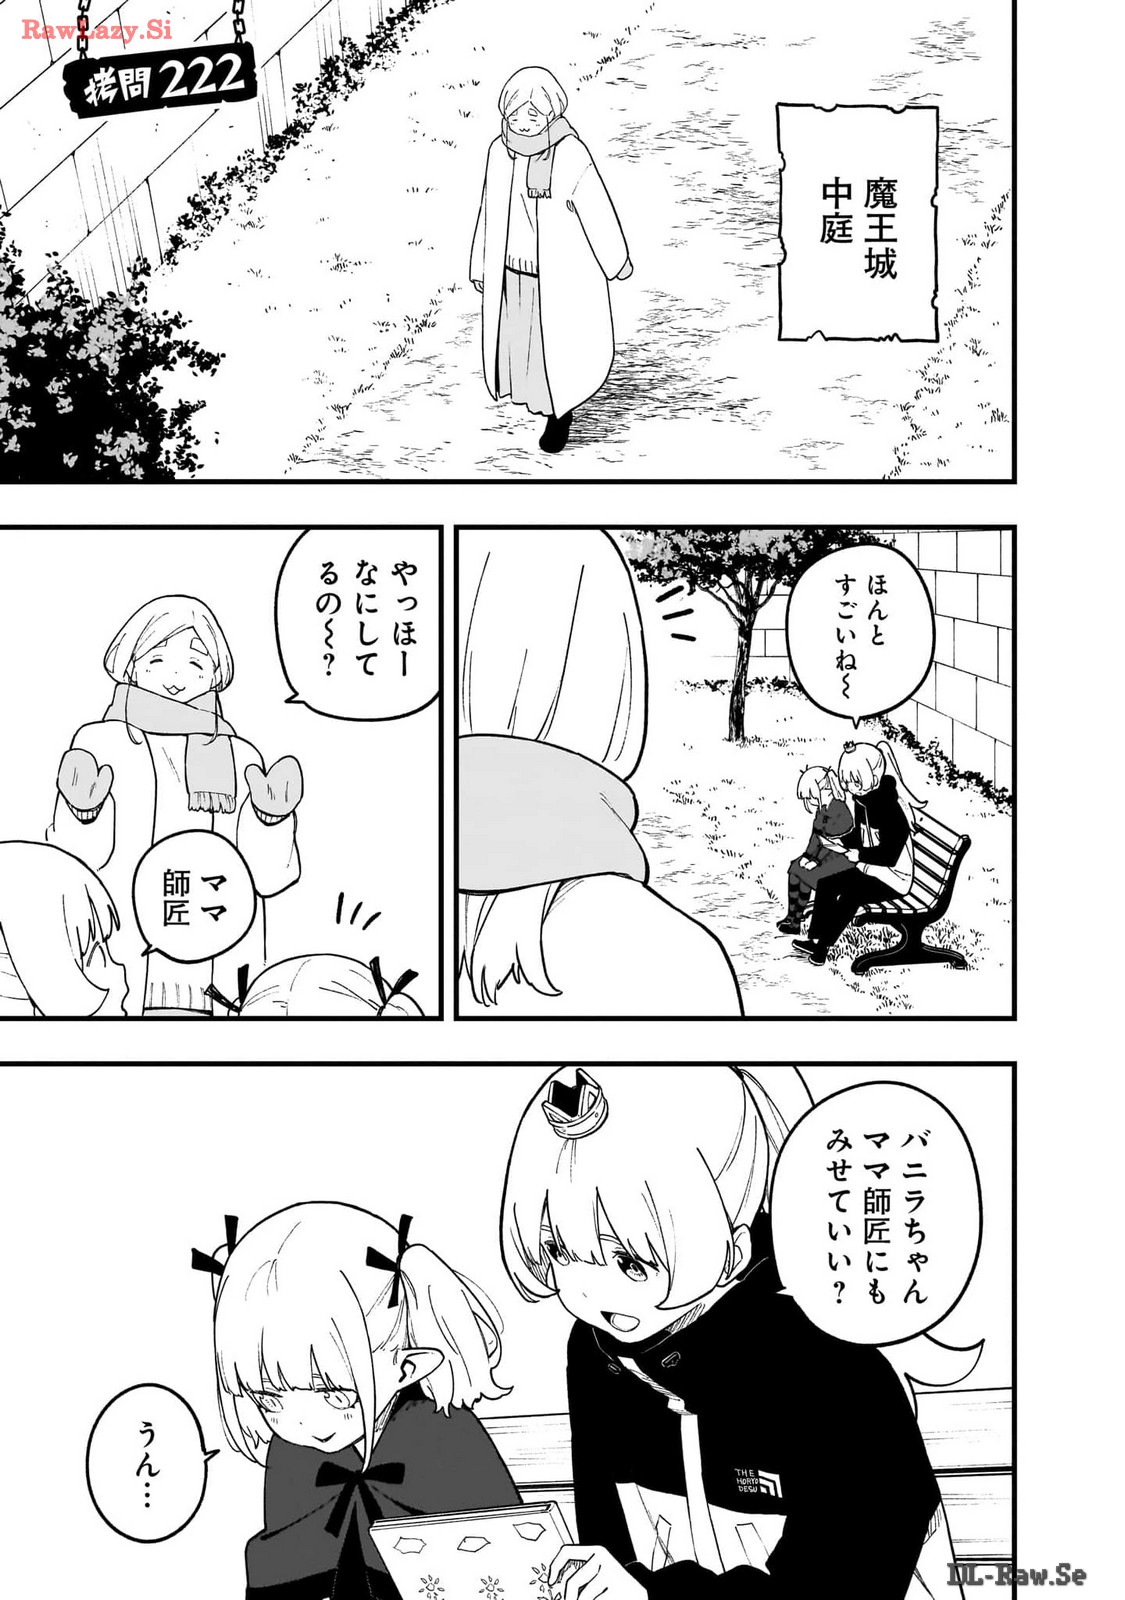 Hime-sama, Goumon no Jikan desu - Chapter 222 - Page 1